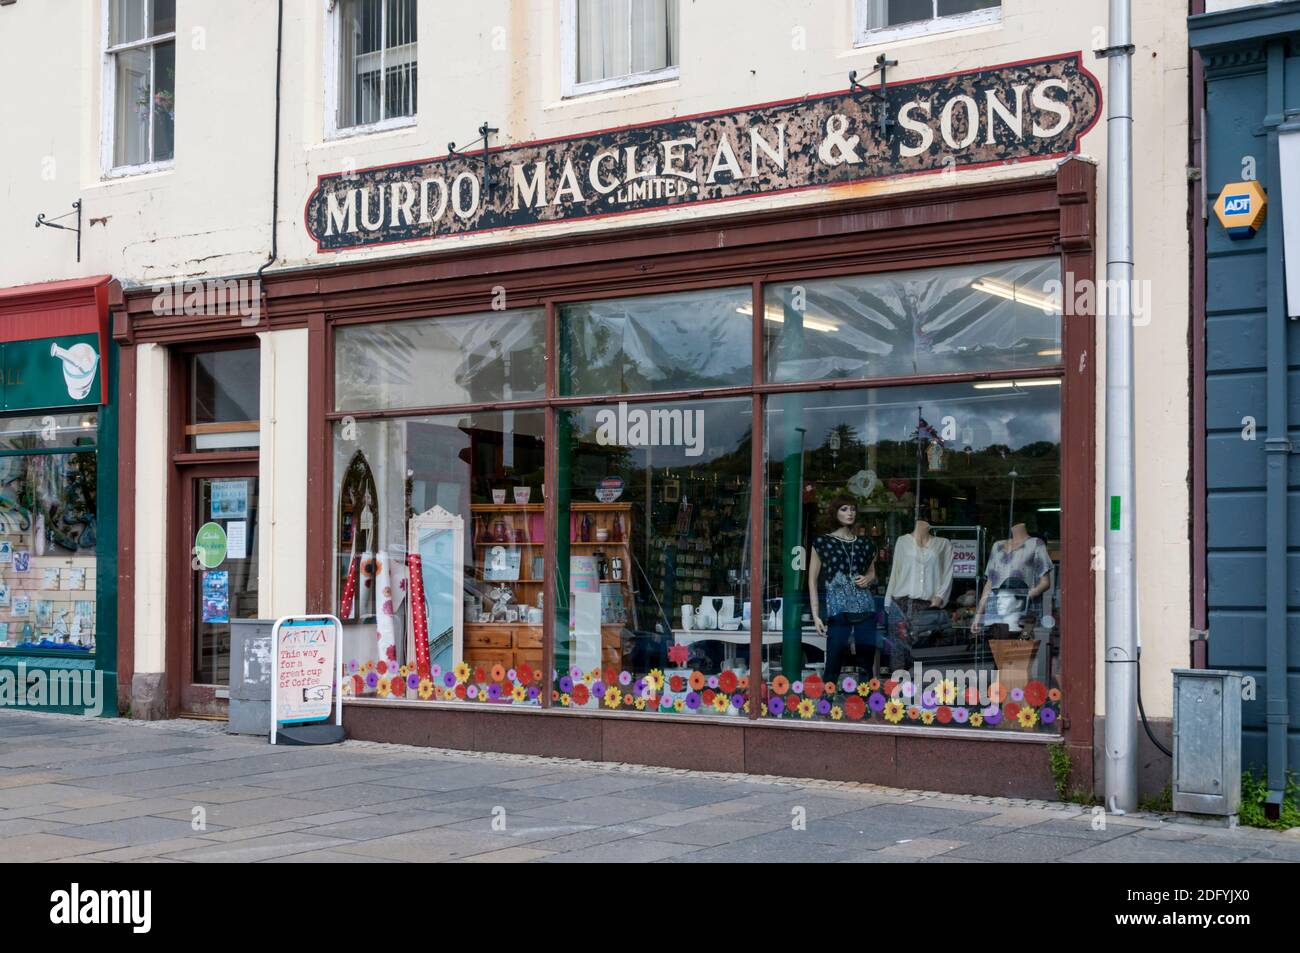 Murdo Maclean & Sons Limited Shop à Stornoway sur l'île de Lewis dans les Hébrides extérieures. Banque D'Images